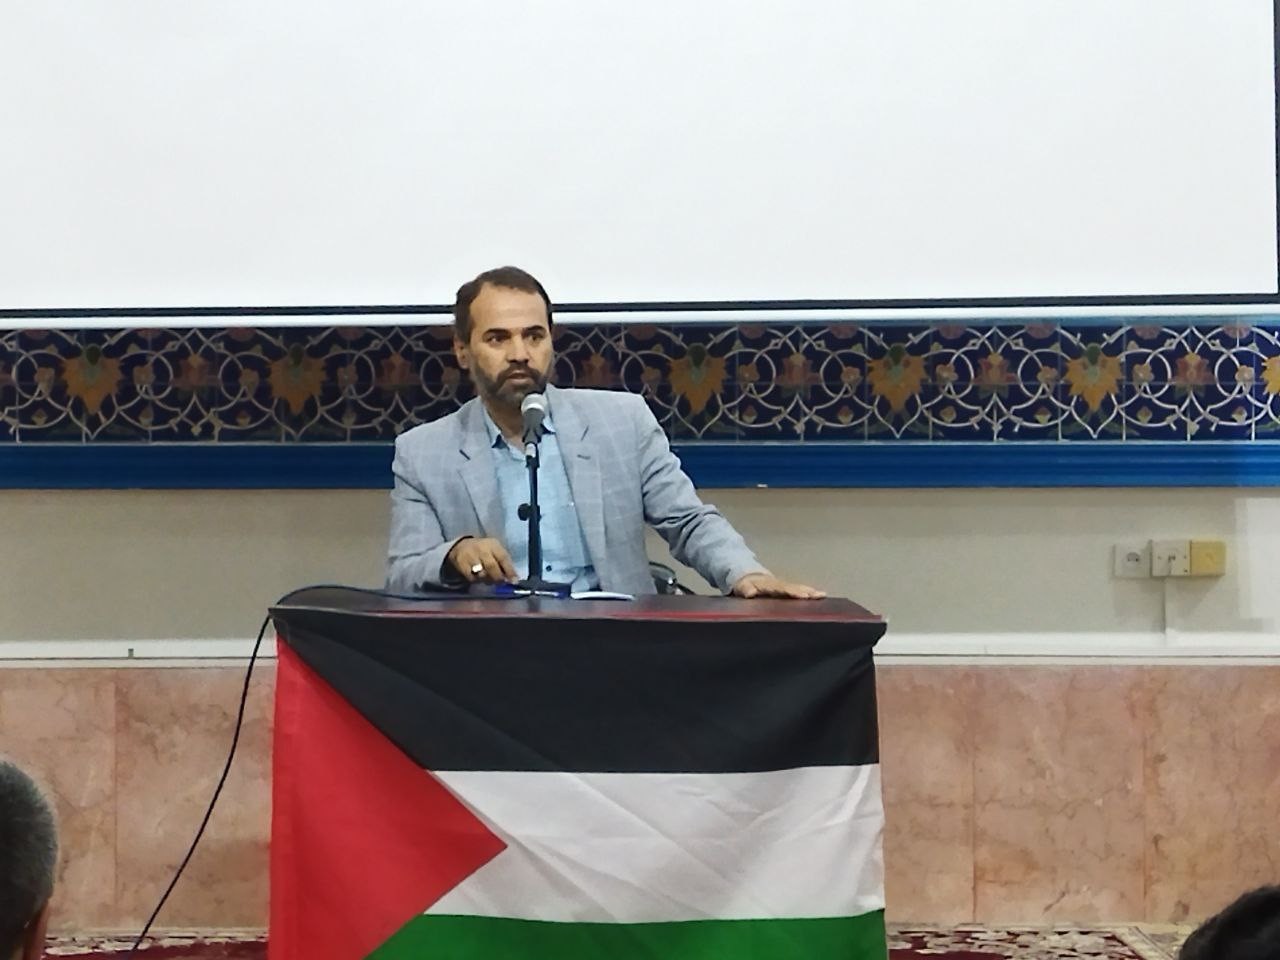 فرمانده بسیج دانشجویی گلستان: صدای مظلومیت فلسطین از قلم هنرمندان شنیده شد